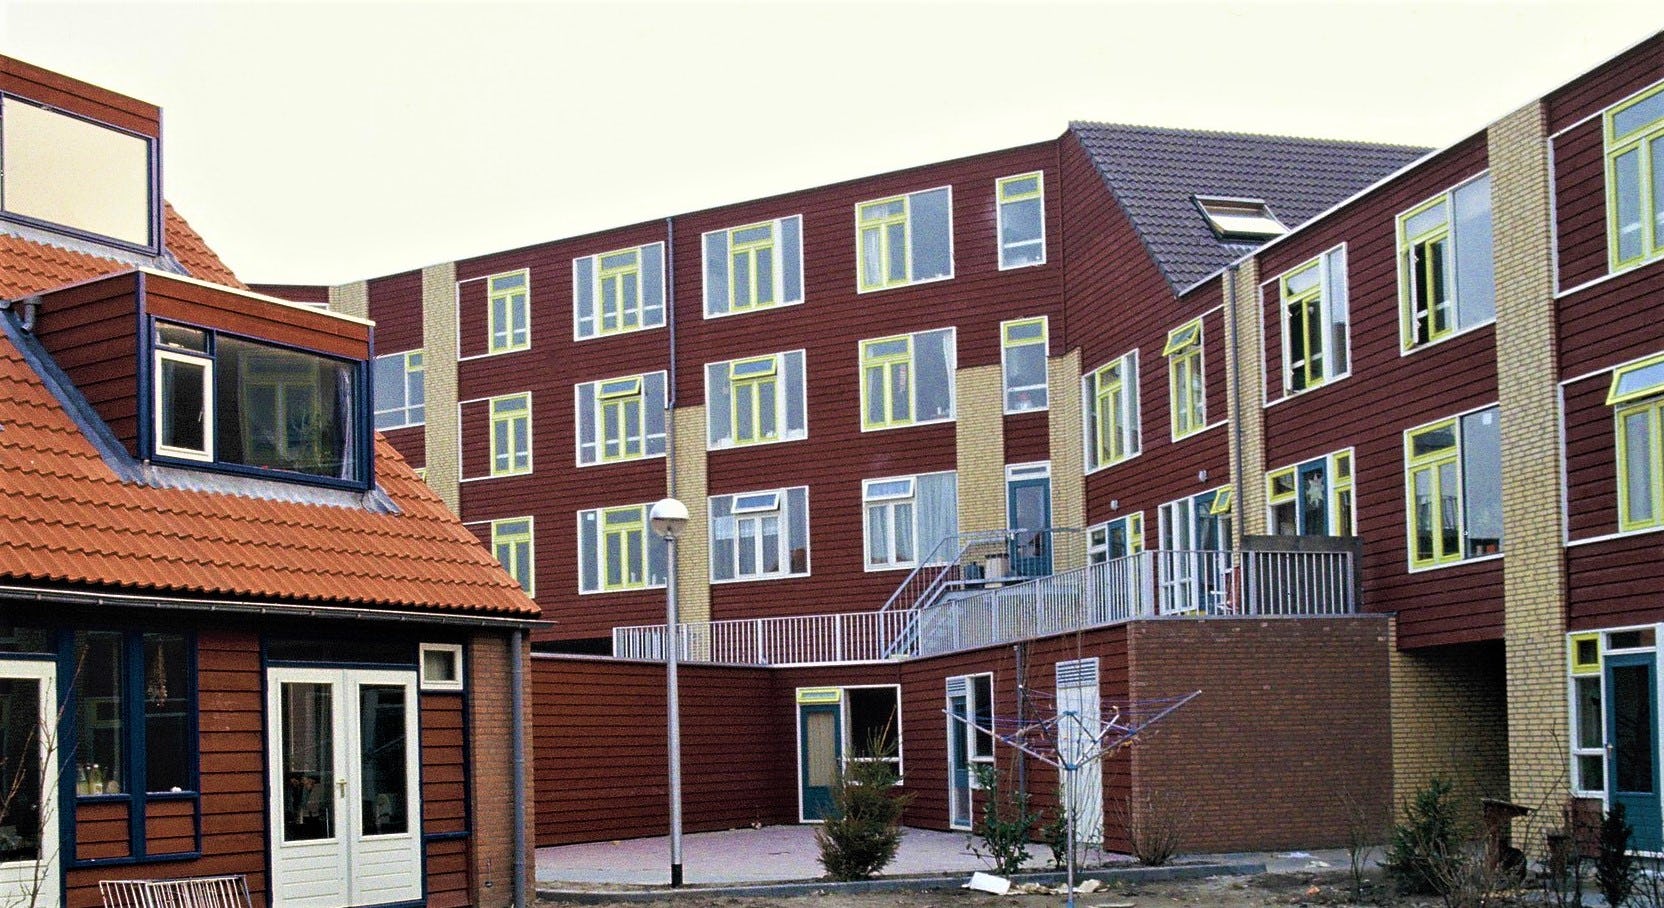 Gemeenschappelijk Wonen in Nieuwegein. 
Oorspronkelijk ontwerp: Flip Krabbendam ‘Bureau Krabbendam’ te Delft
Renovatie door: Martine de Wit & Hans Vermeulen van DUS Architects 